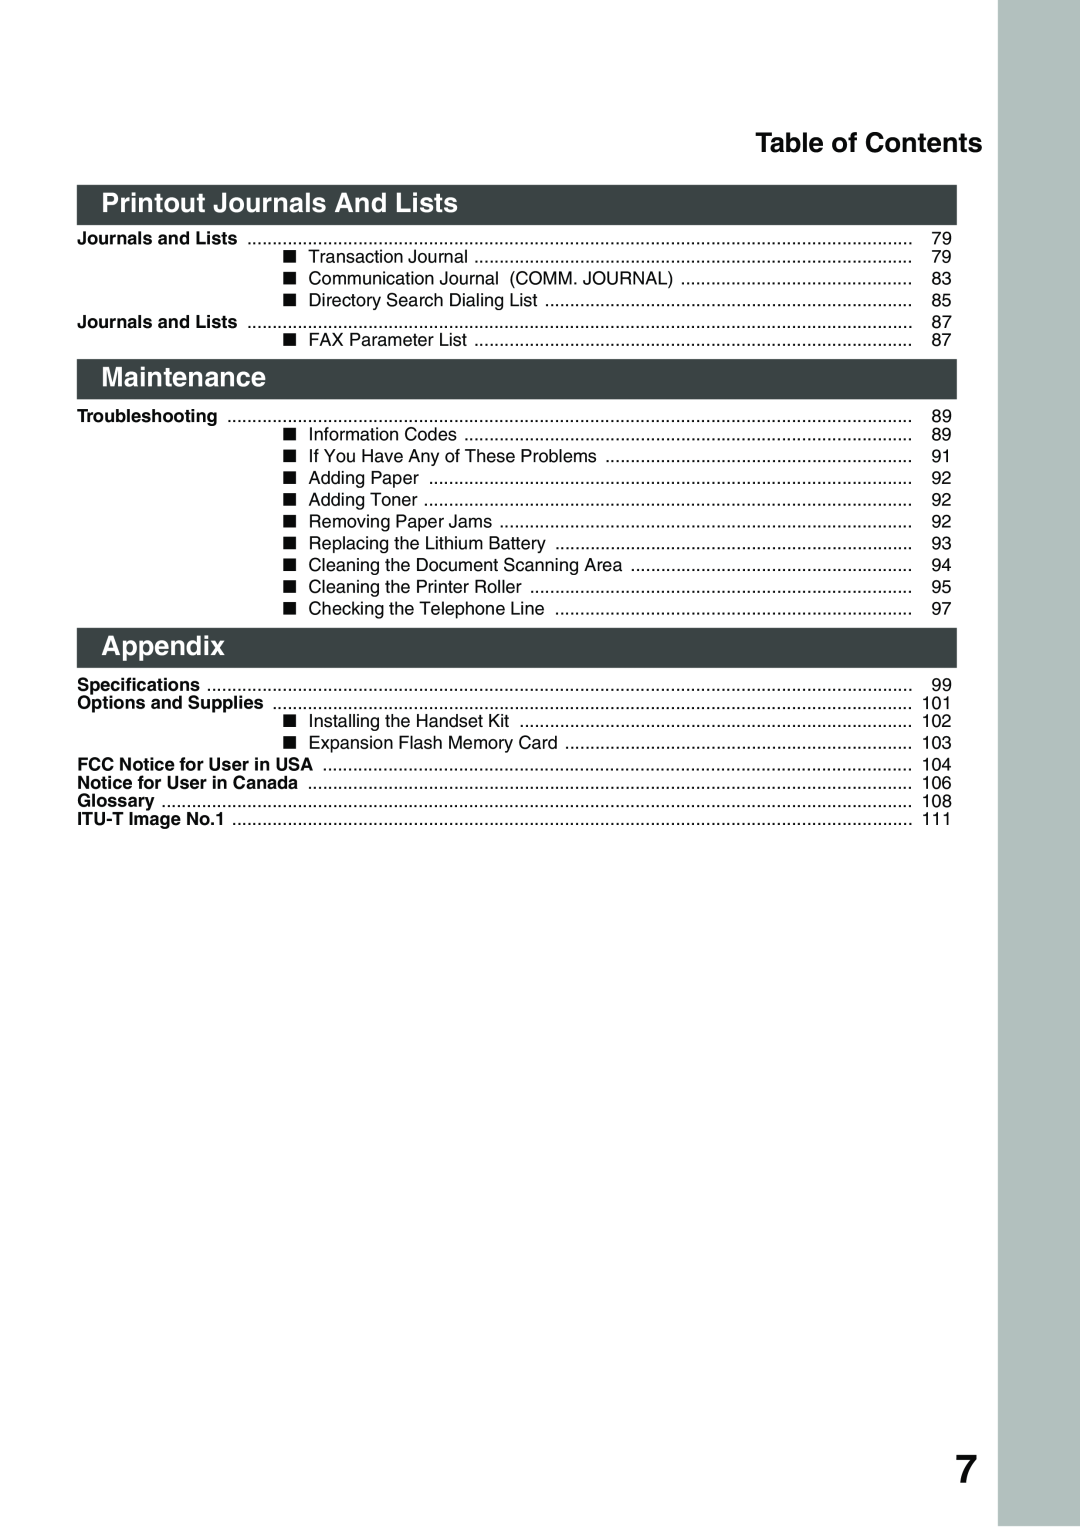 Panasonic DP-135FP appendix Printout Journals And Lists, Maintenance, Appendix, Table of Contents 